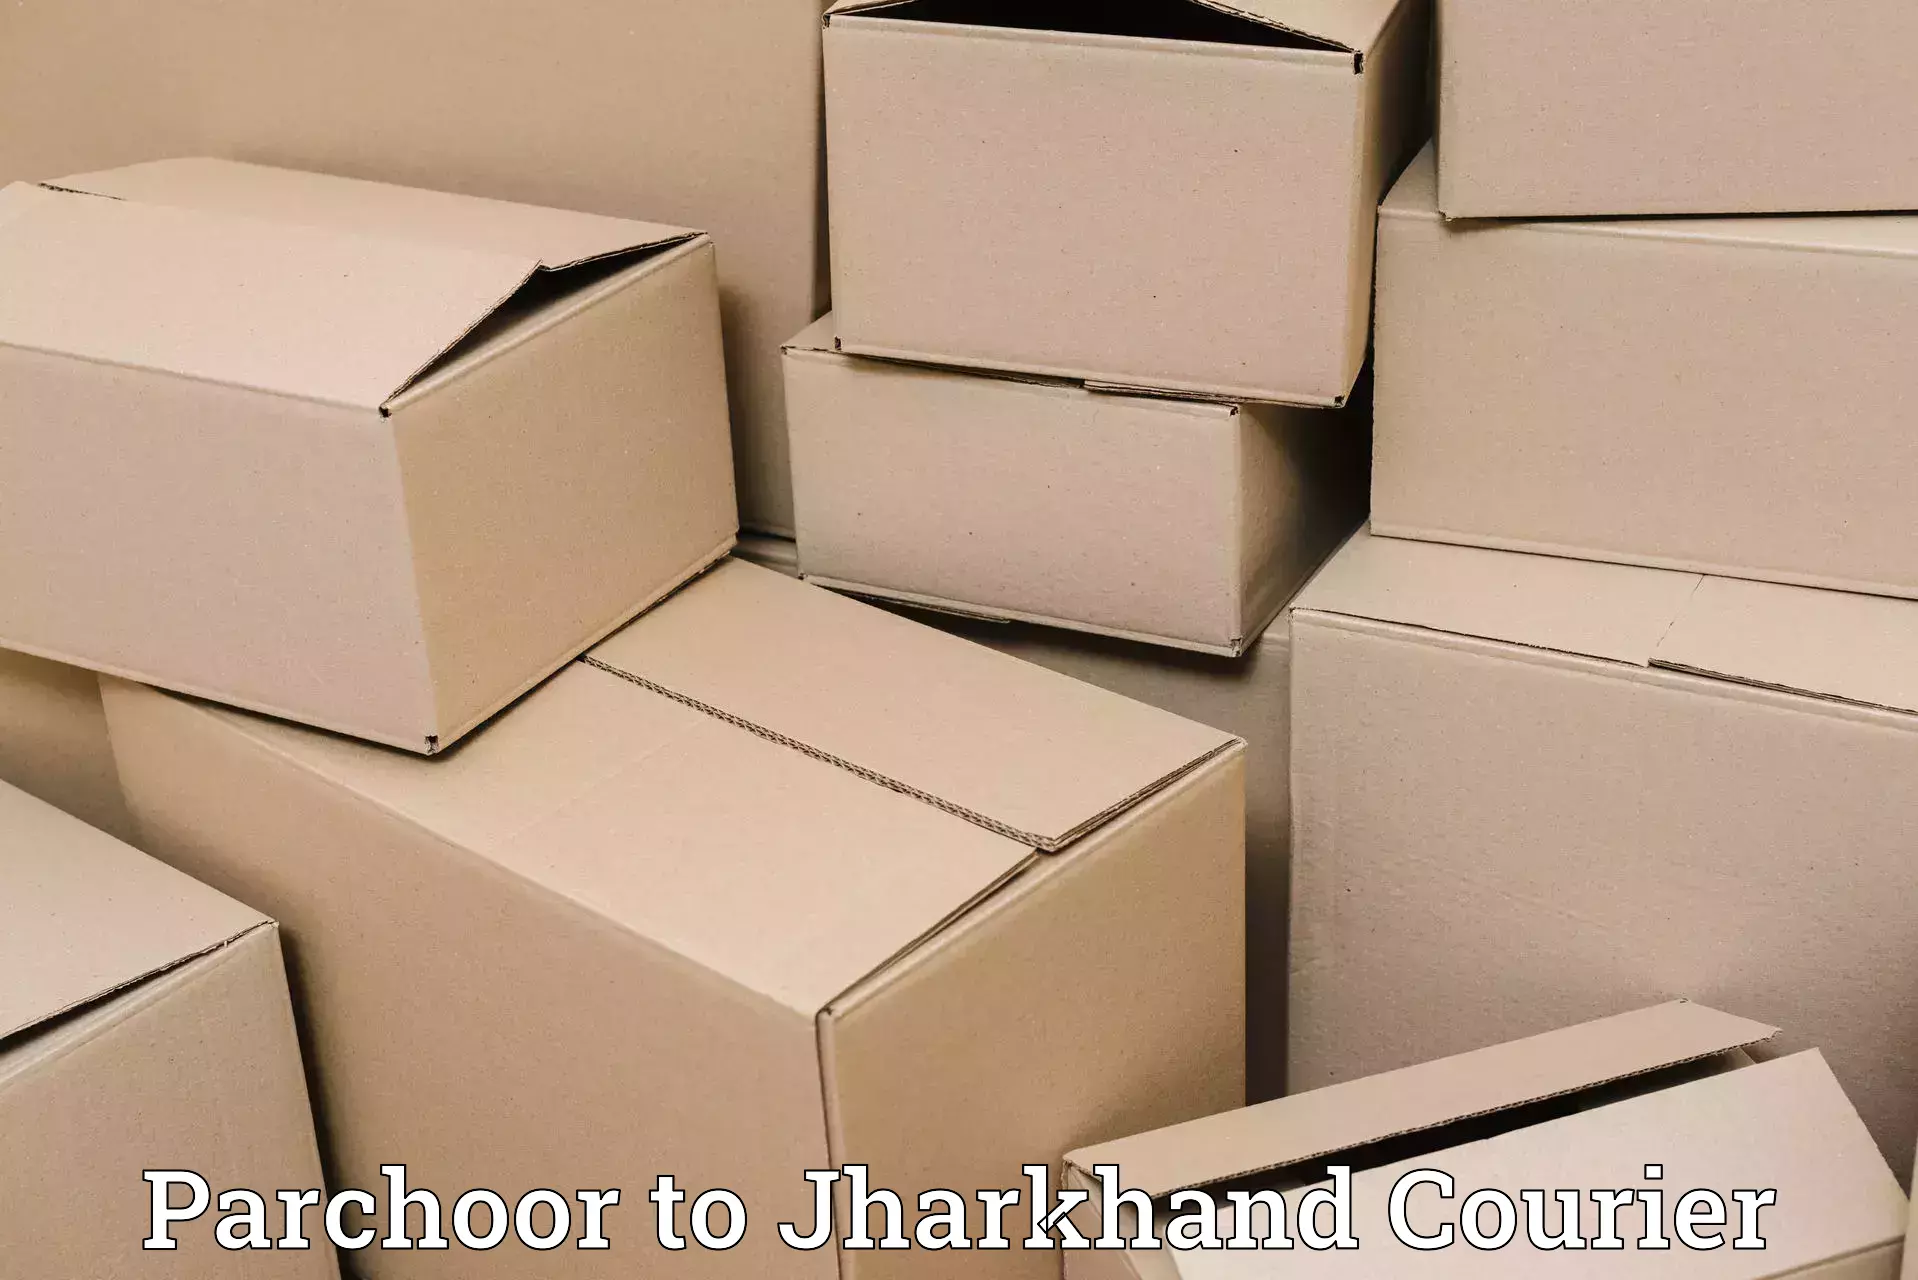 Digital courier platforms Parchoor to NIT Jamshedpur